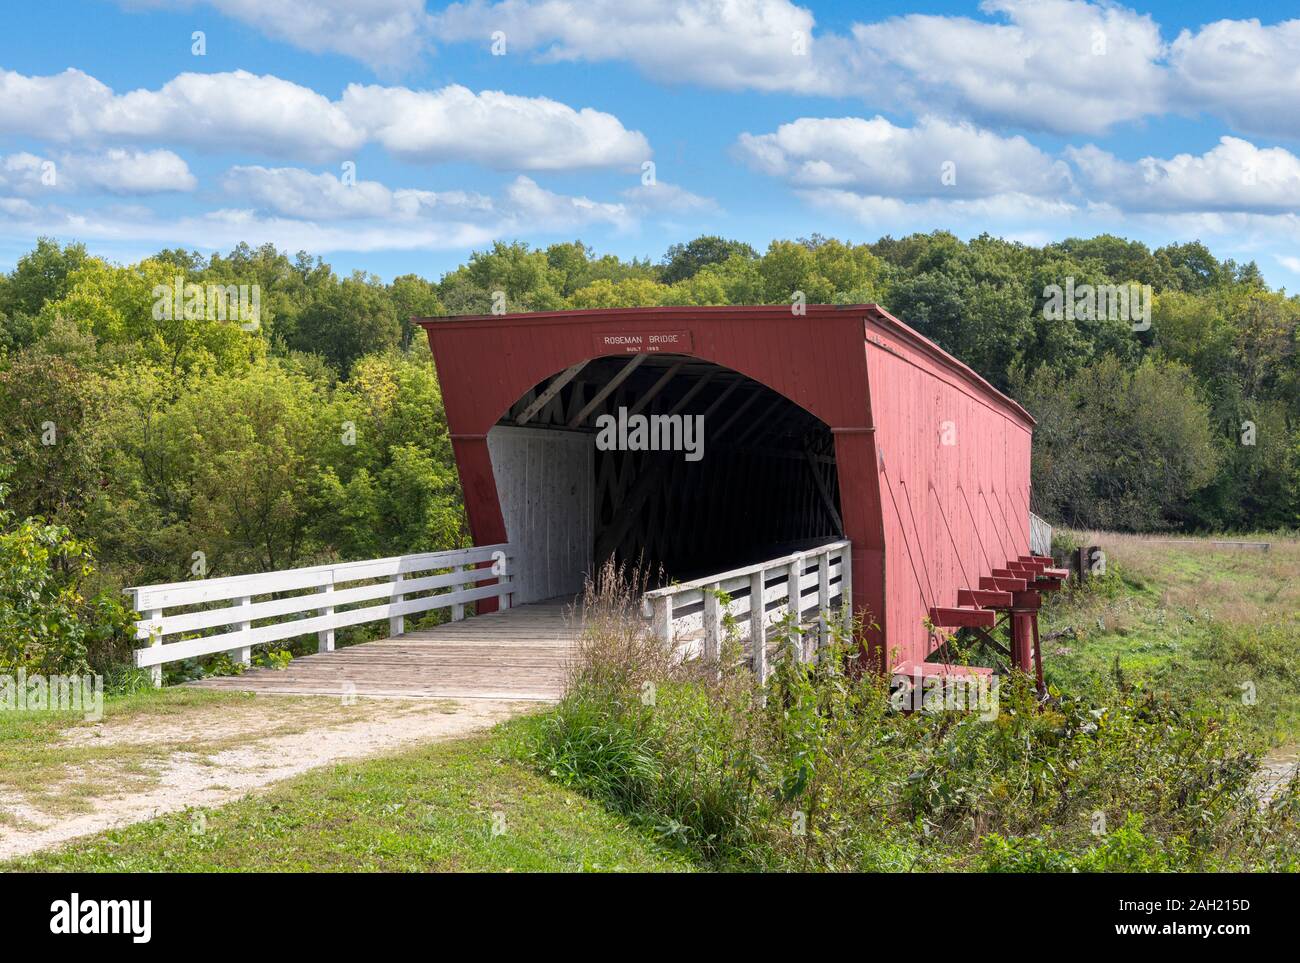 Roseman pont couvert, l'un des ponts du comté de Madison, Winterset, Iowa, États-Unis Banque D'Images